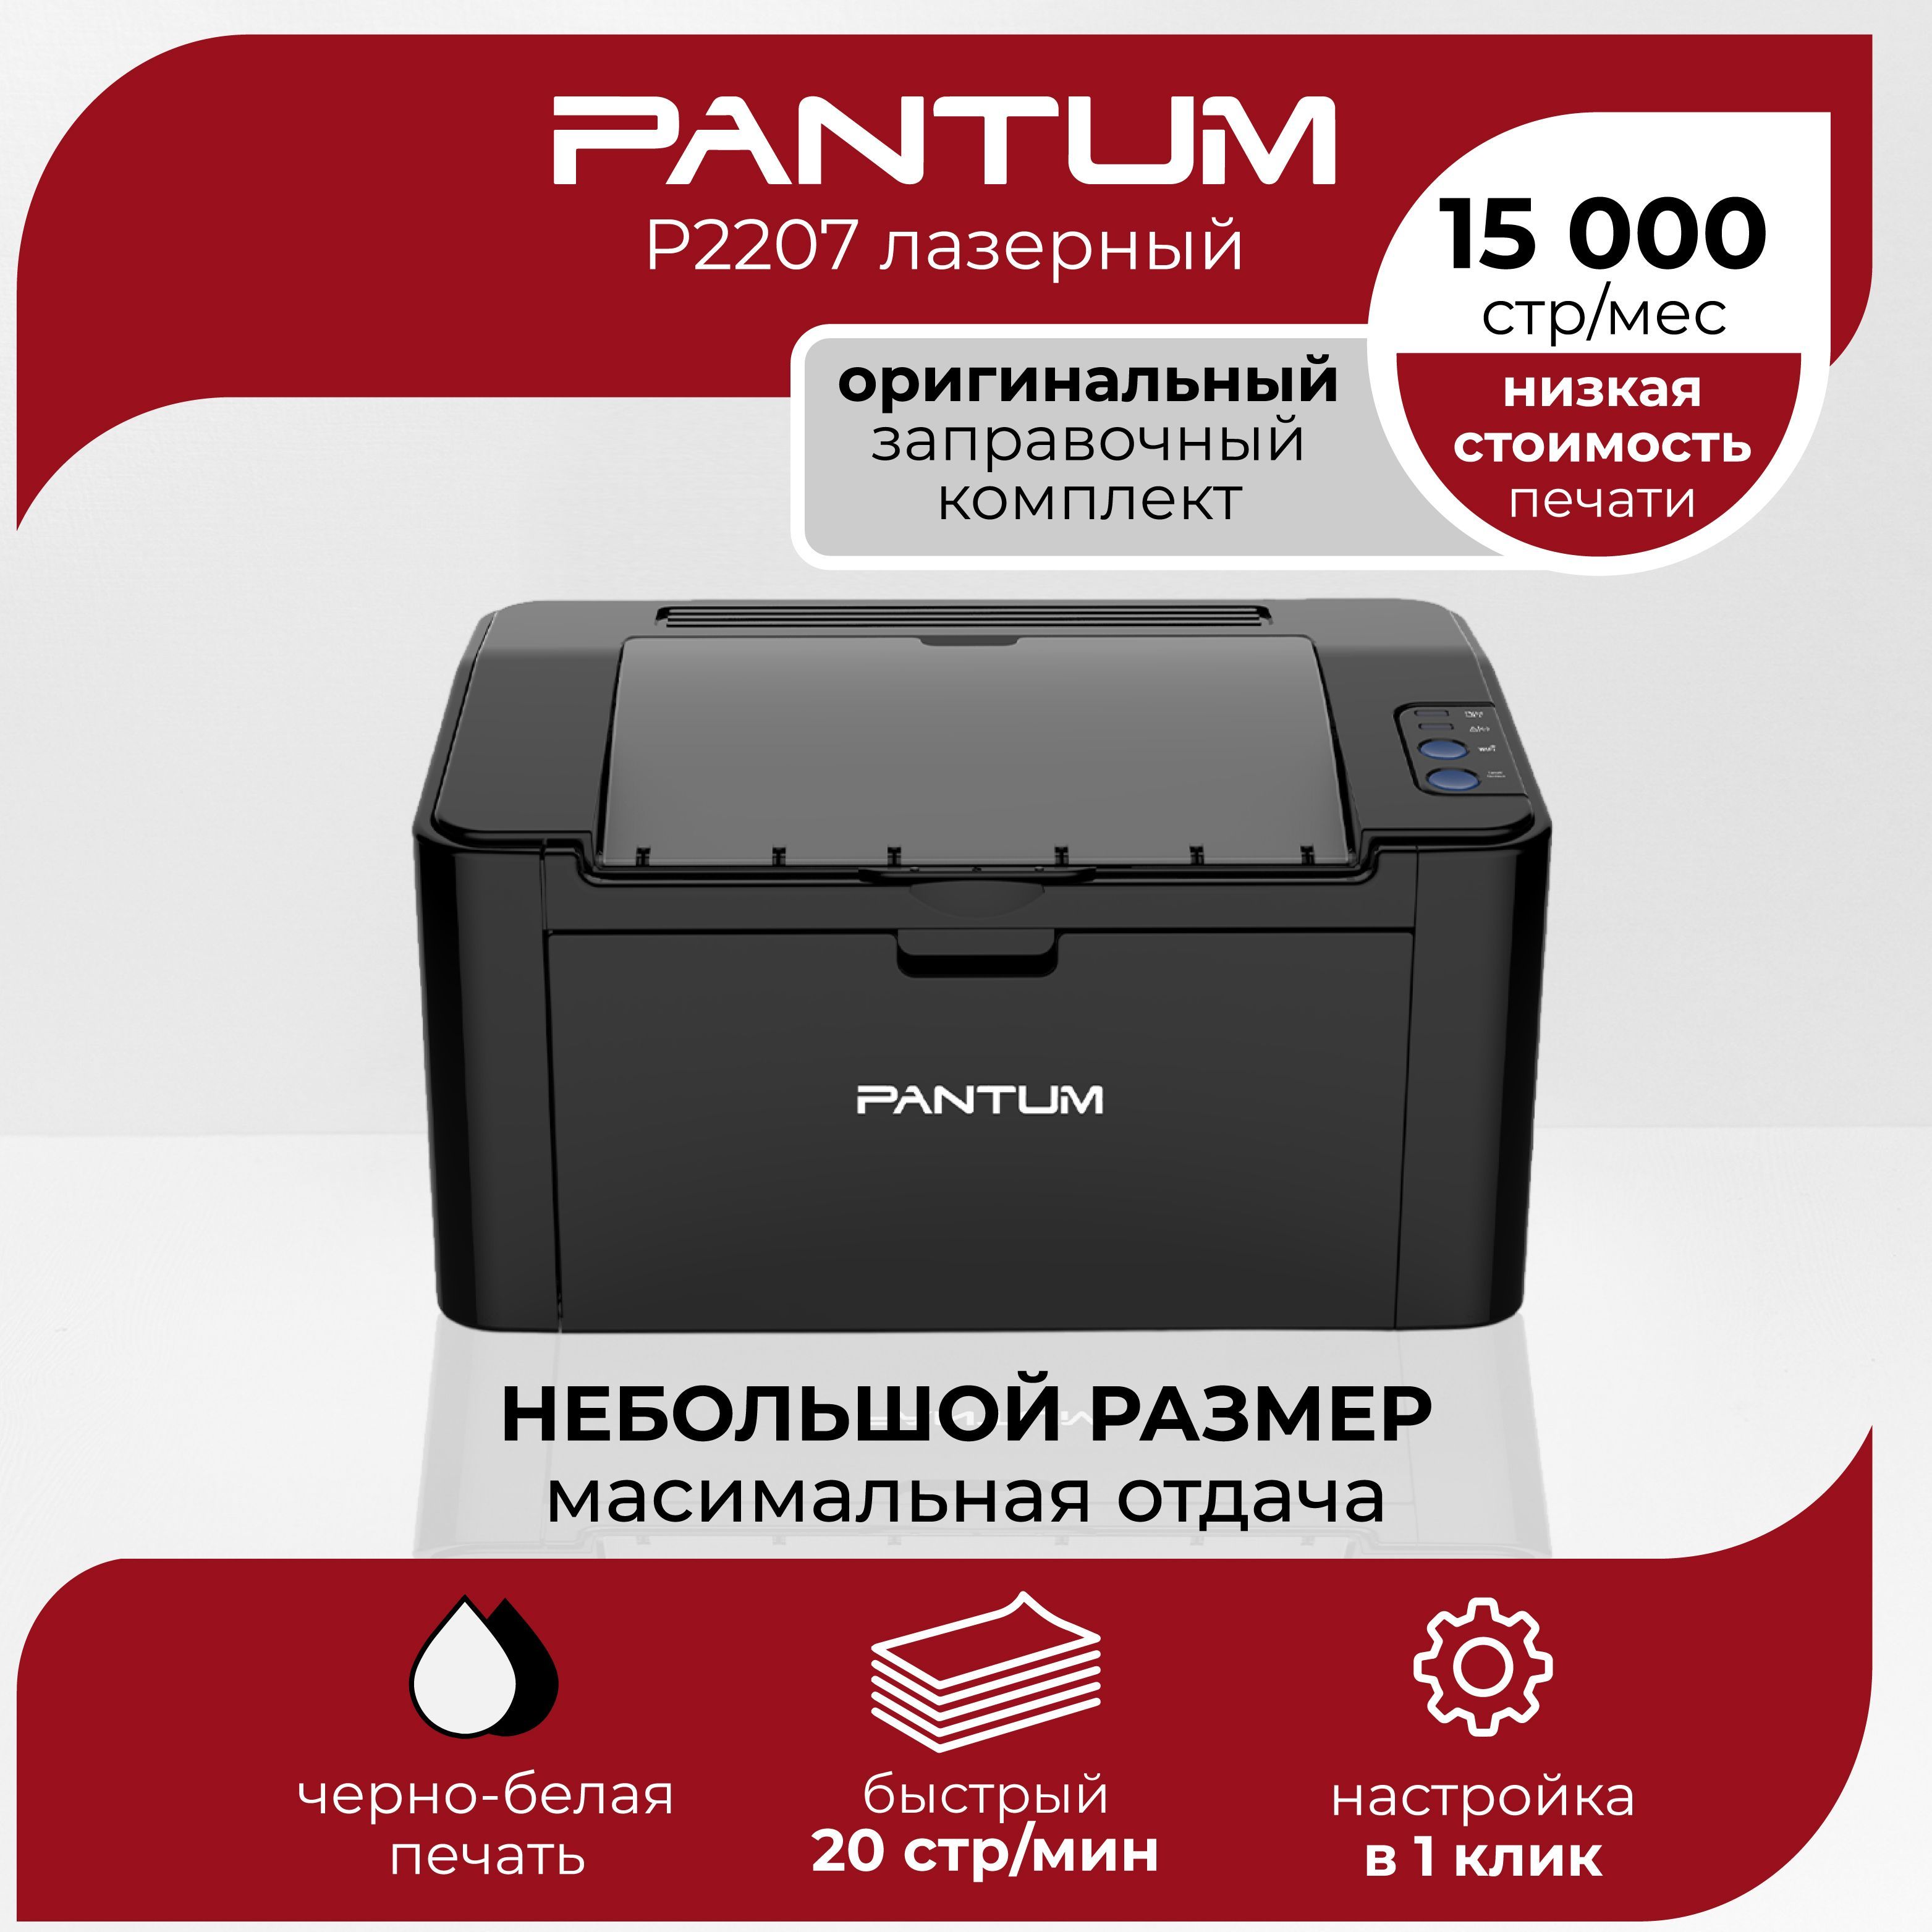 Купить принтер pantum p2207. Принтер монохромный Pantum p2207. Принтер лазерный Pantum p2207. Принтер лазерный Pantum 6502. Устройство принтера Pantum p2207.